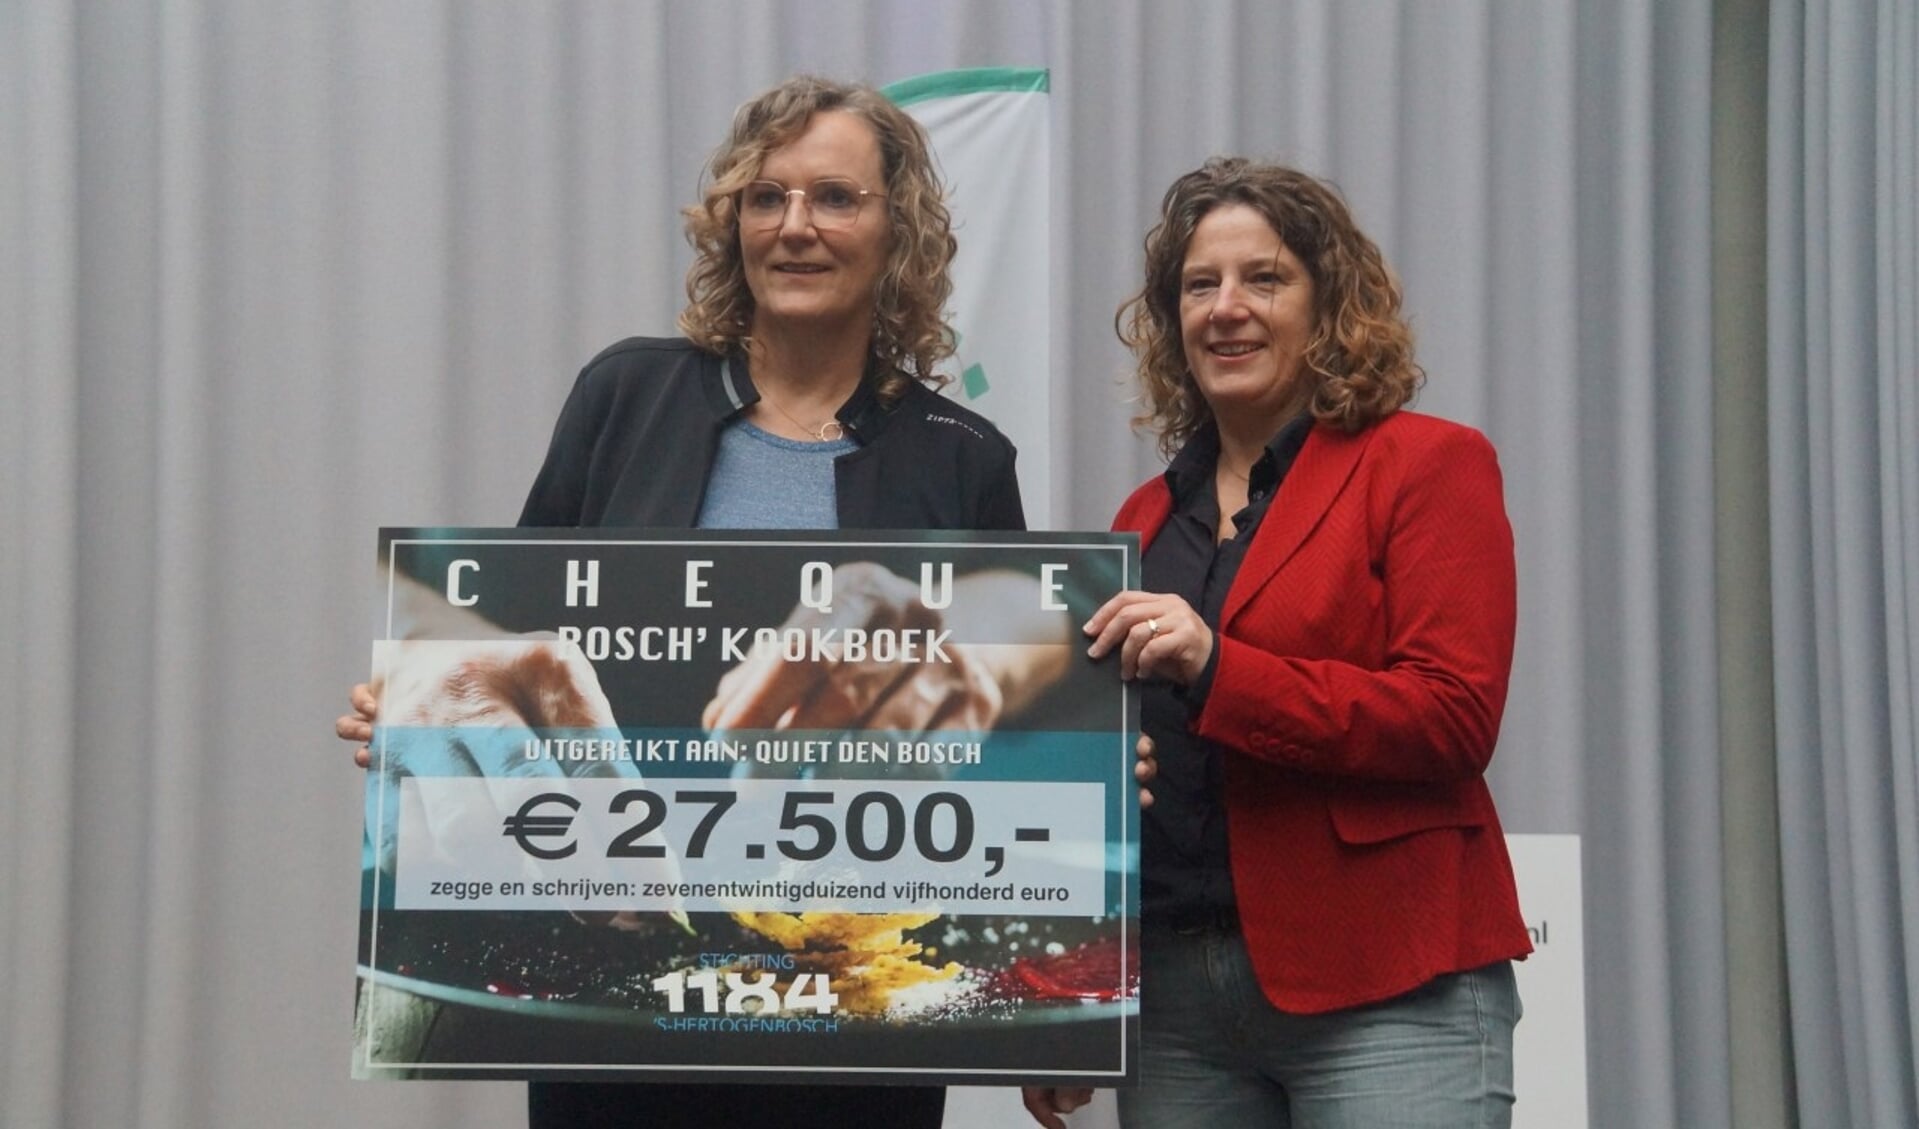 De uitreiking van de cheque aan Stichting Quiet Den Bosch vond plaats op 3 december. Op de foto overhandigt Stichting 1184 voorzitter Marieke Knook (rechts) de cheque aan Yvette Hurkens van Stichting Quiet.